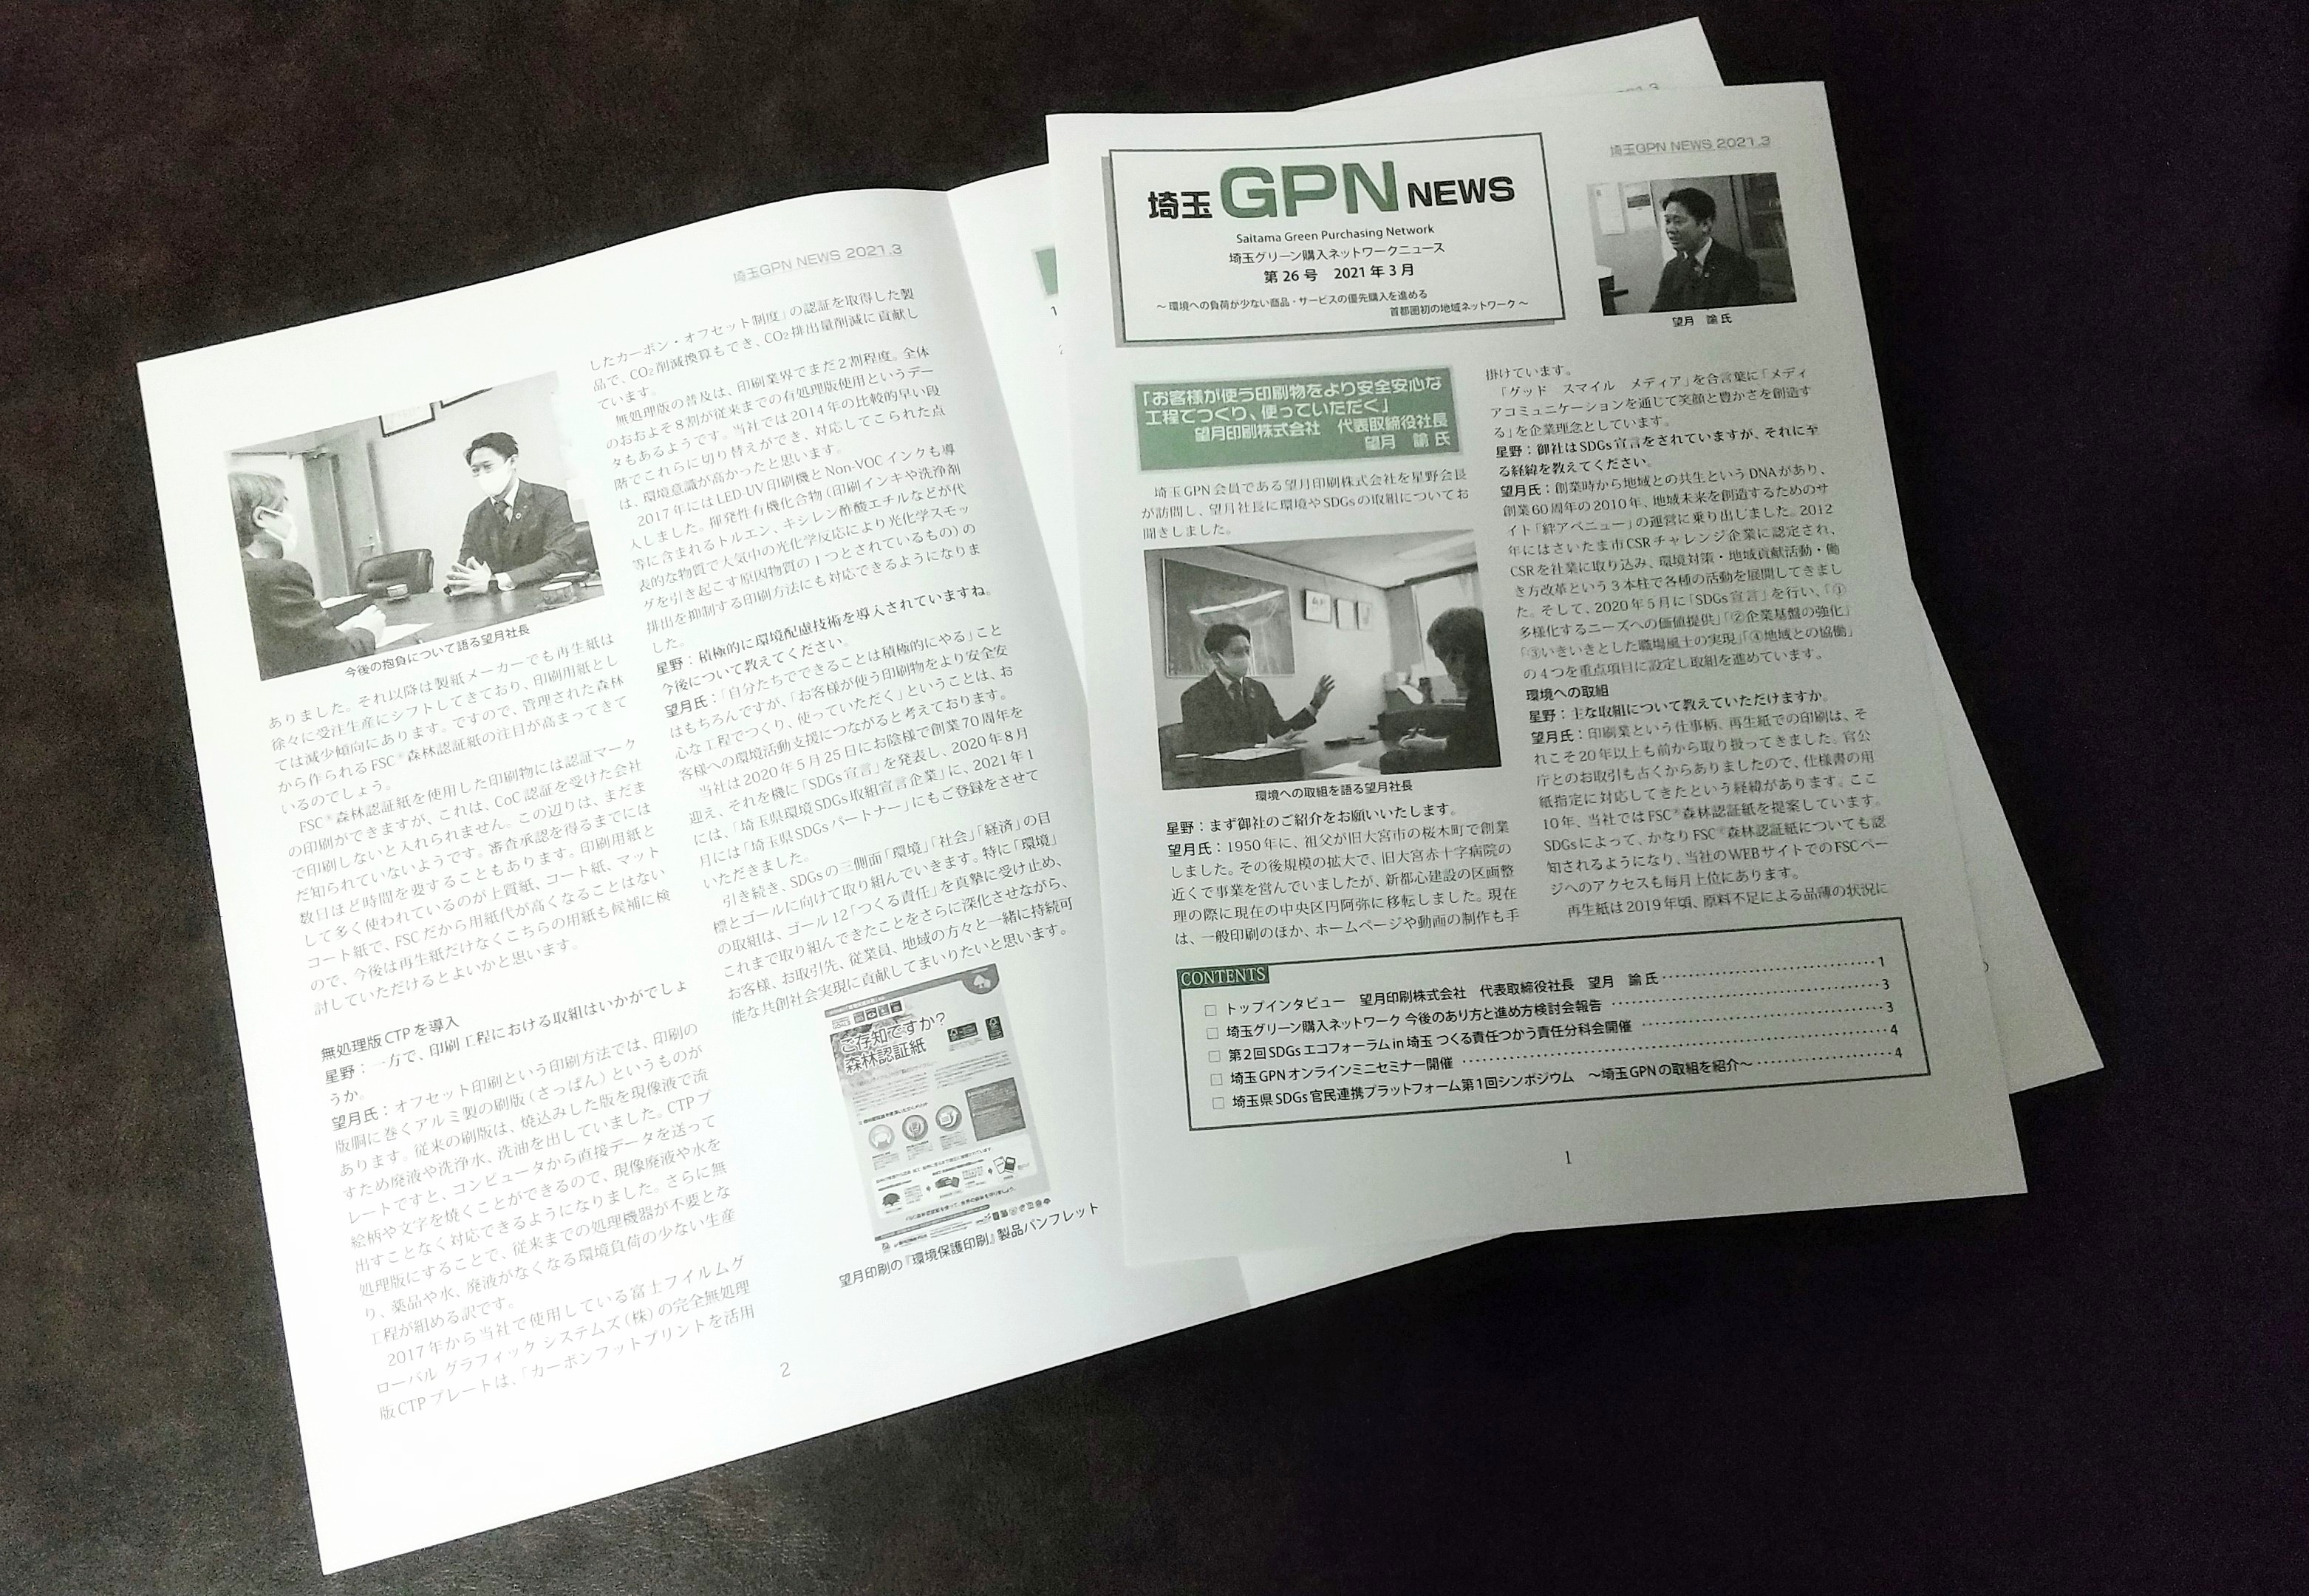 埼玉GPN NEWS 第26号で取材ご掲載いただきました。